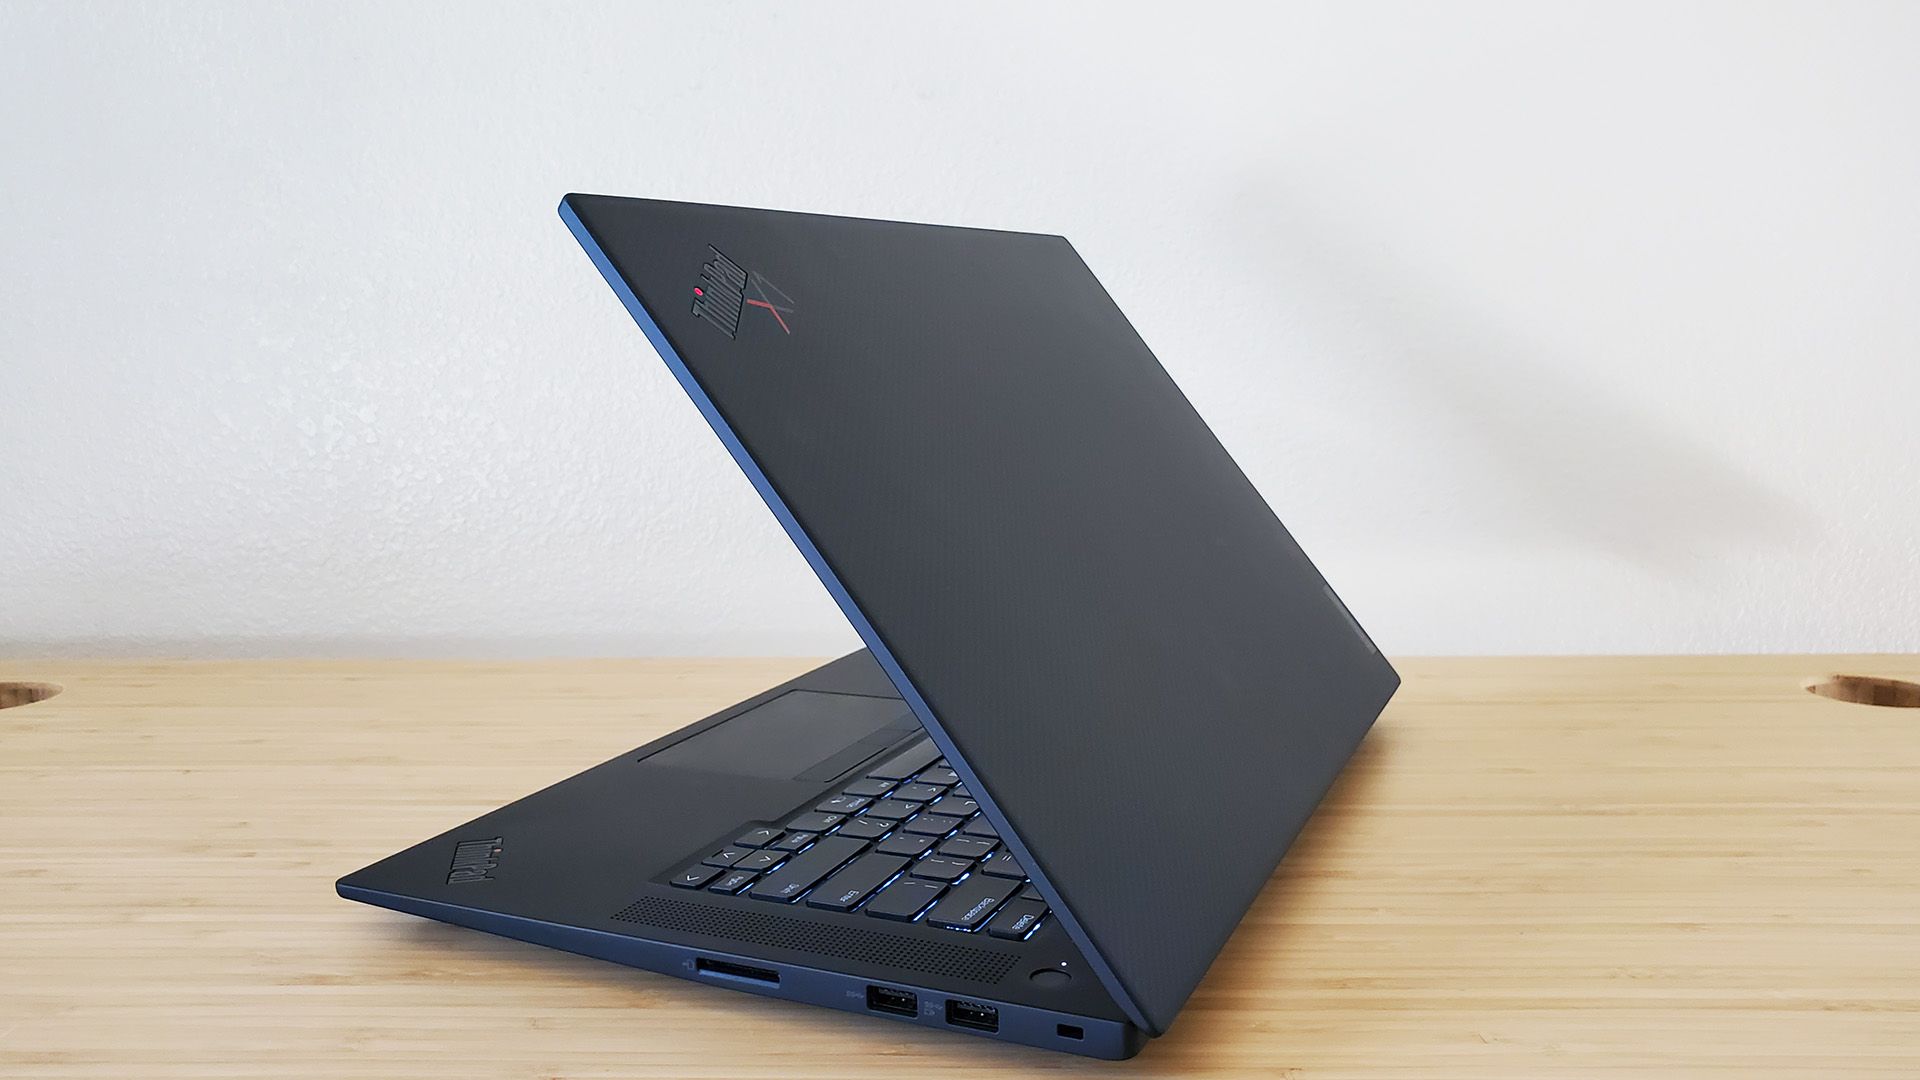 O laptop Lenovo ThinkPad X1 Extreme Gen 5 aberto sobre uma mesa.